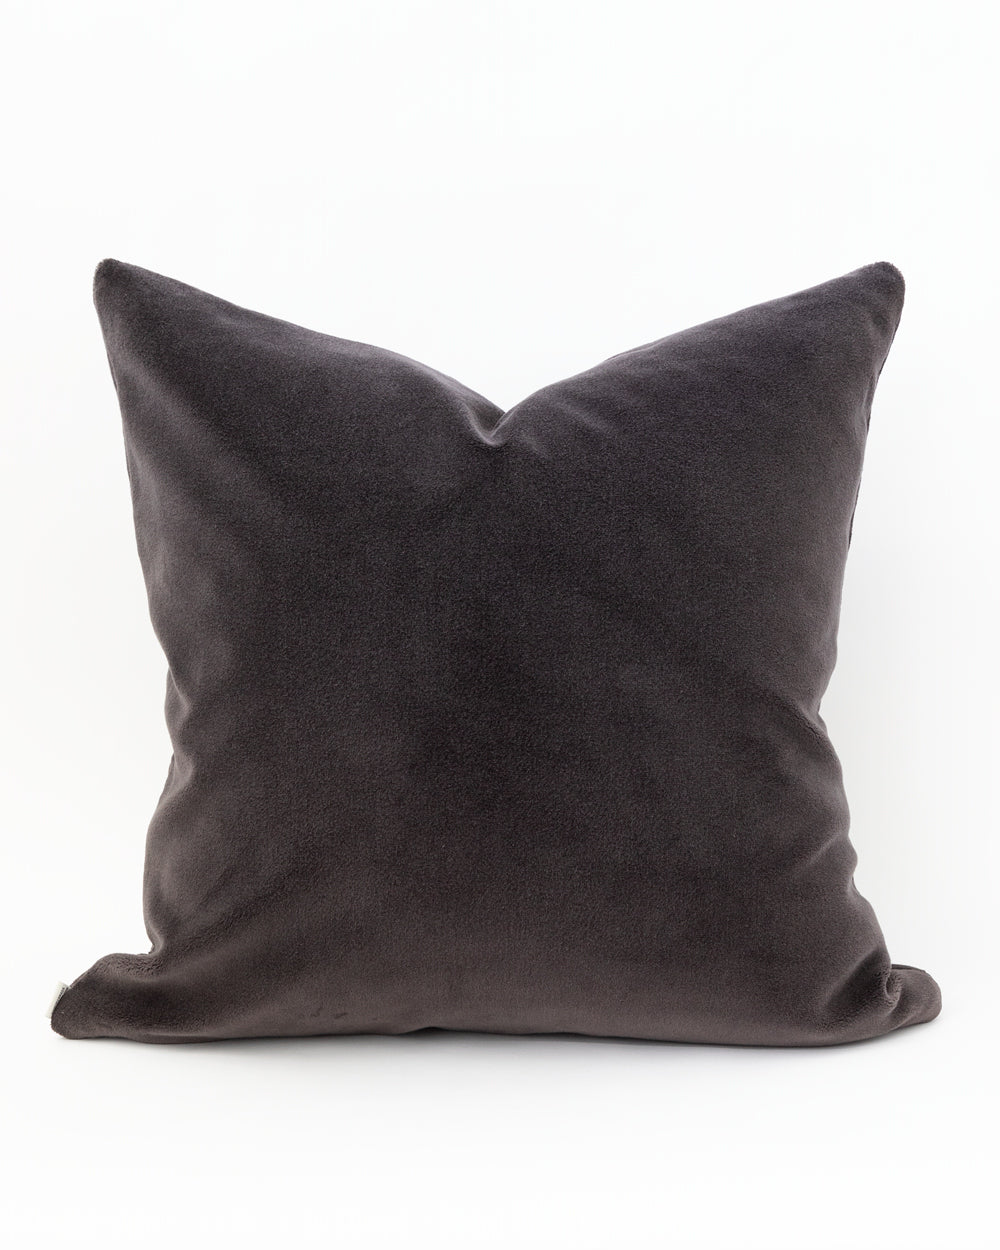 Hugo Velvet Pillow Cover, Charcoal